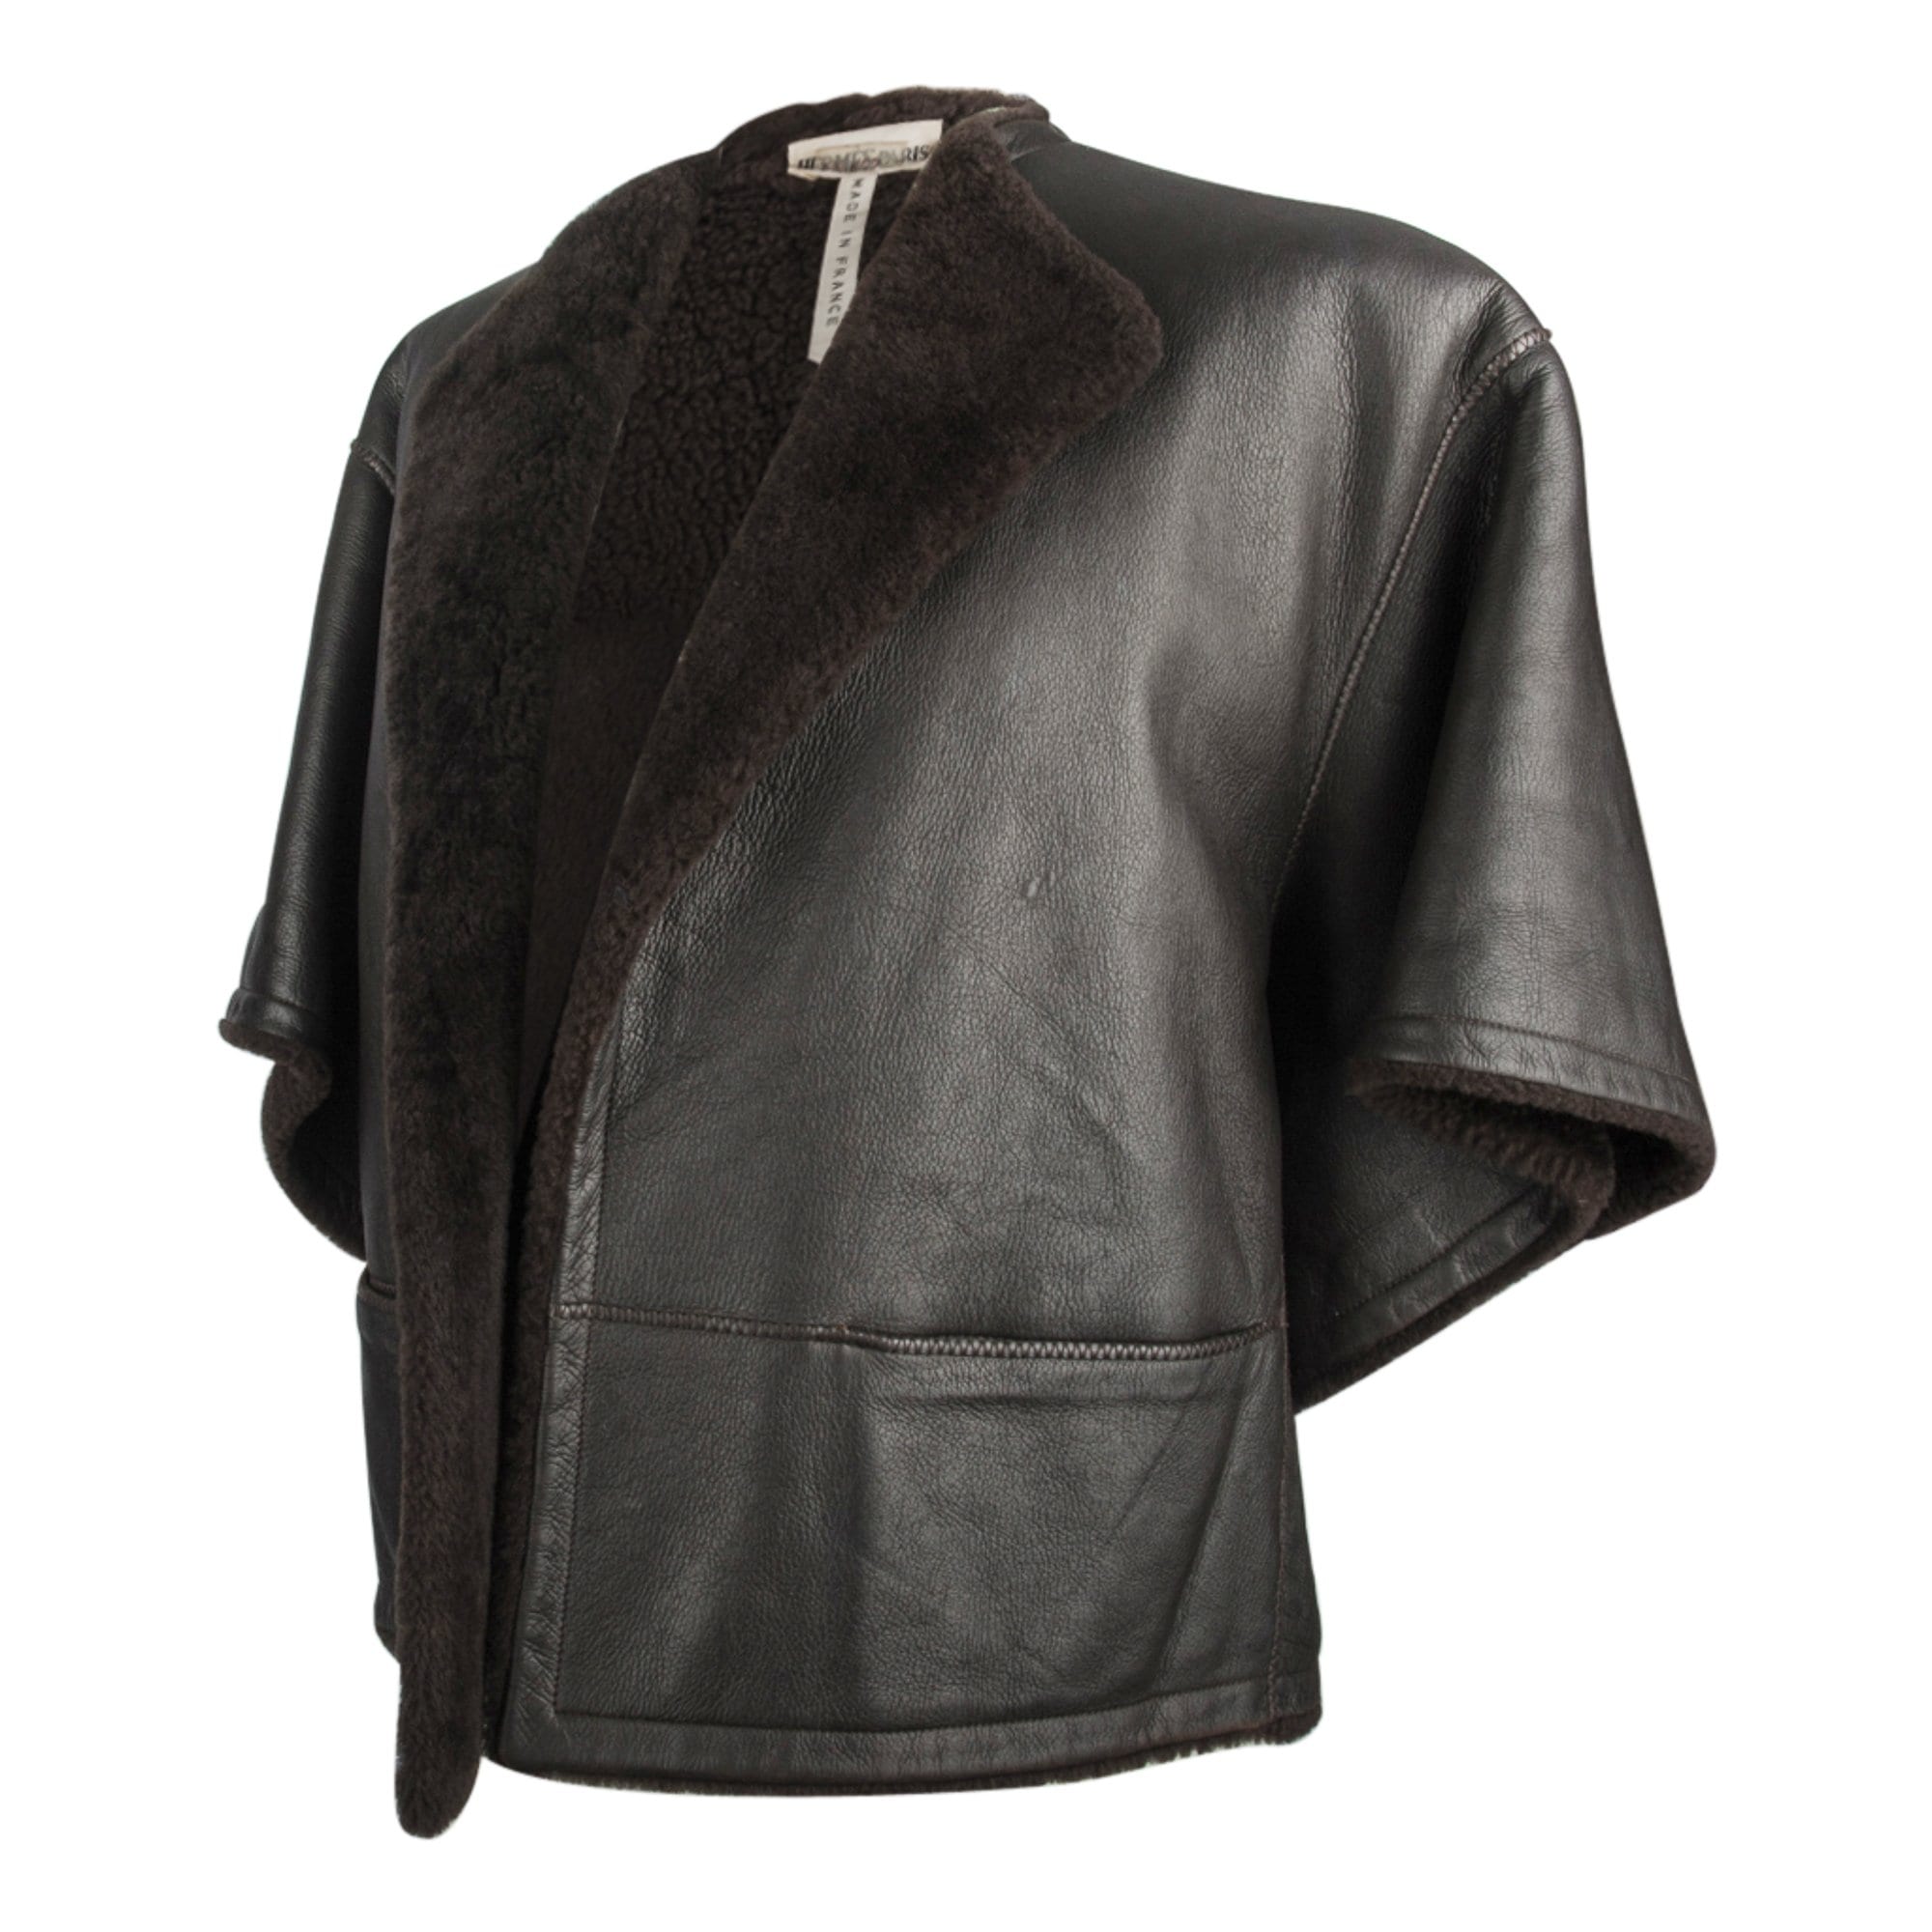 Hermes Jacket Dark Brown Striking Shearling 3/4 Sleeve 38 / 4